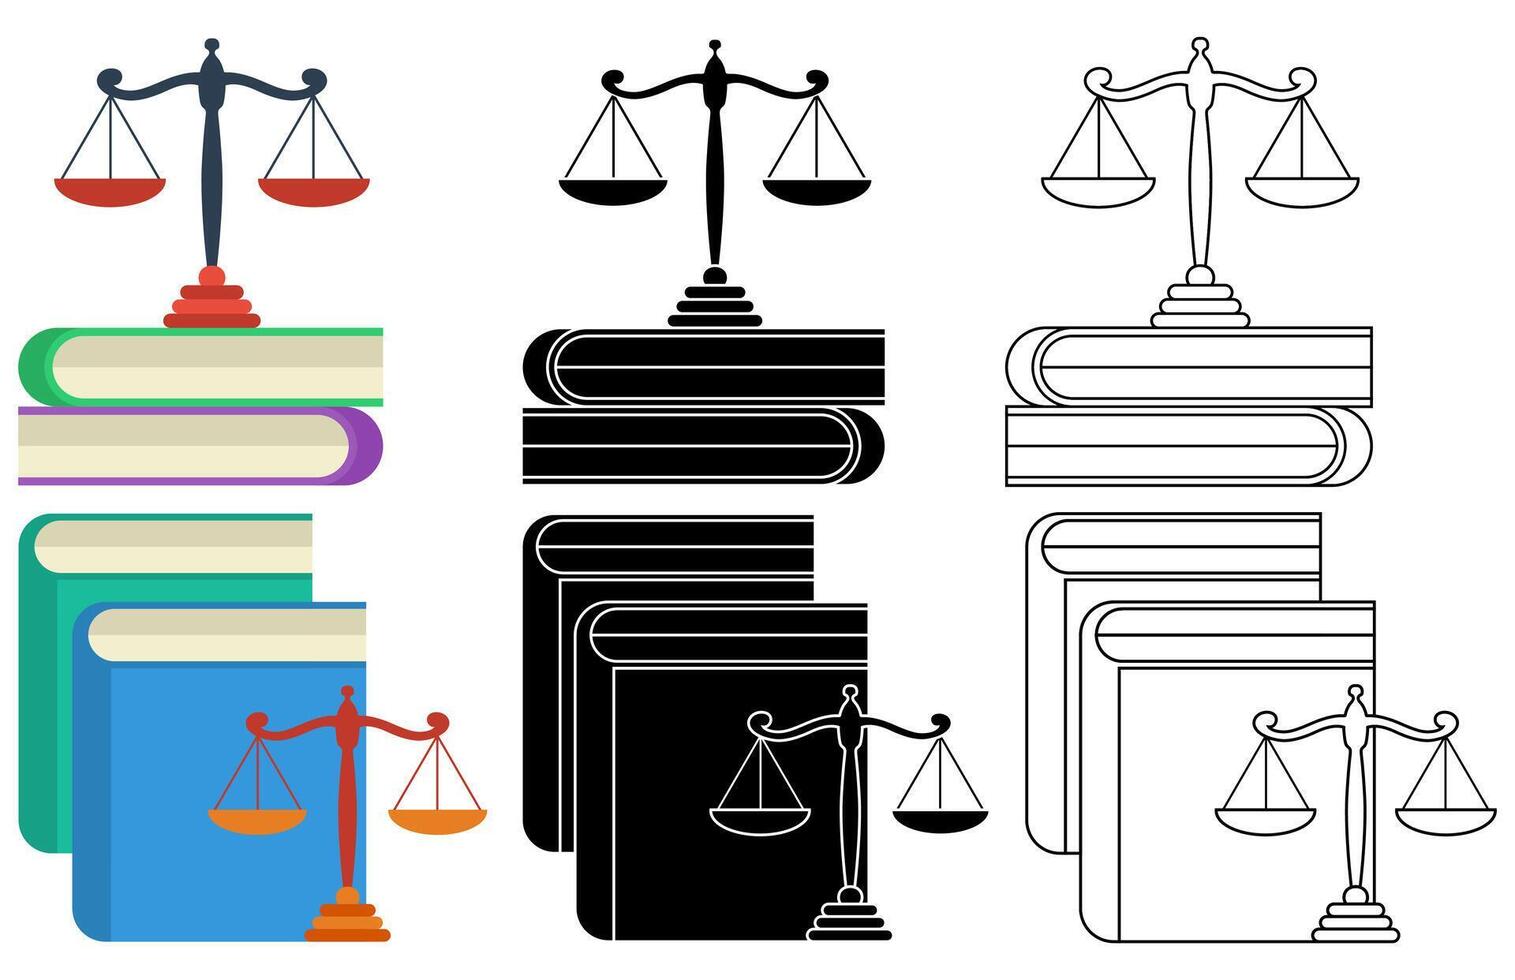 reeks boeken met schaal van gerechtigheid pictogrammen. wet onderwijs symbool vlak ontwerp illustratie vector